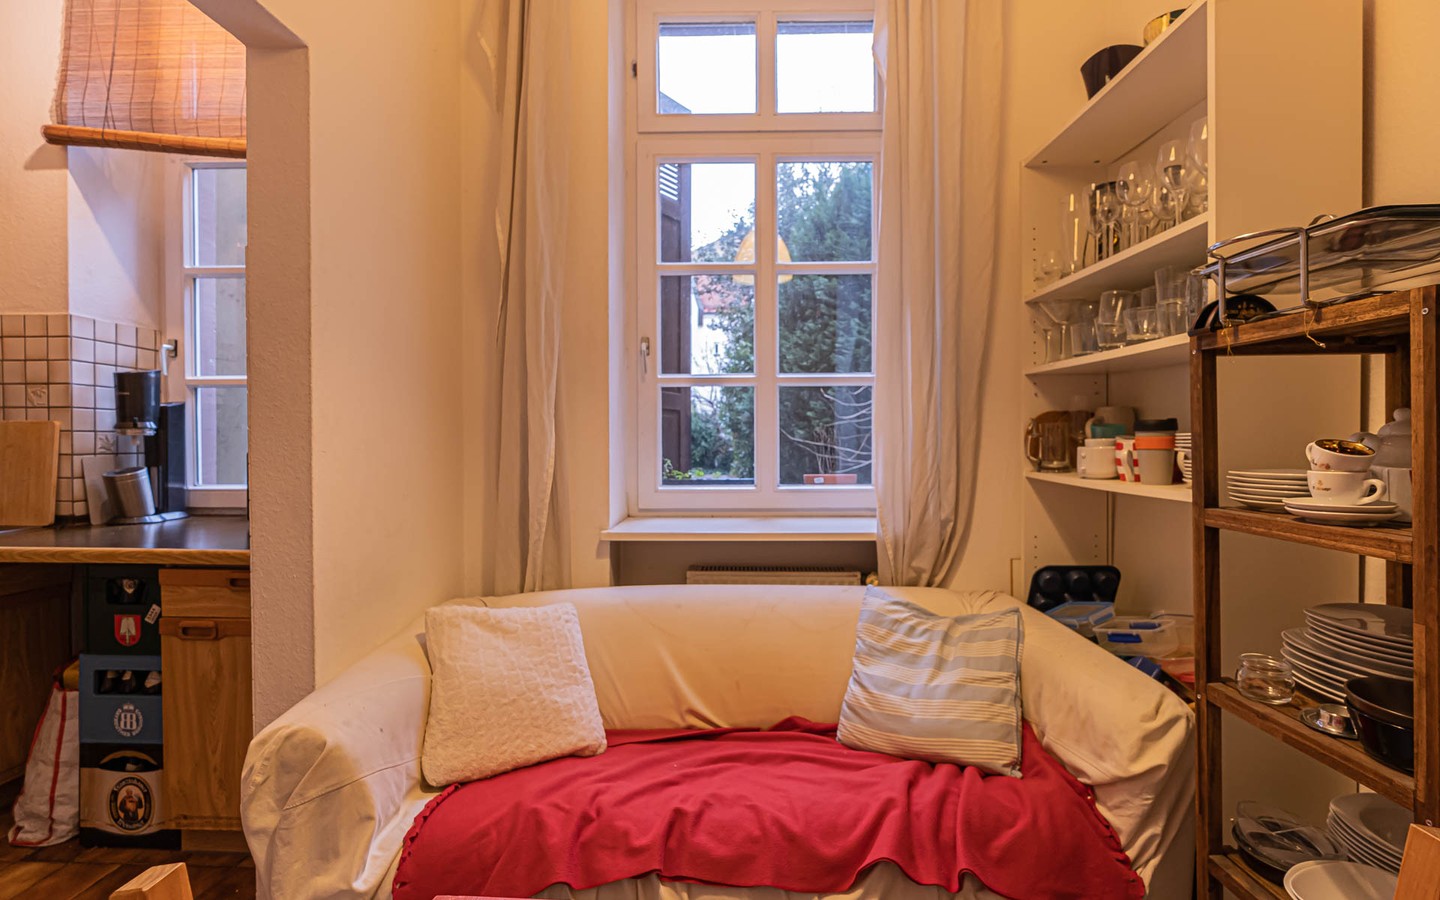 Wohnzimmer - Kapitalanleger aufgepasst: Tolle 2,5-Zimmer-Wohnung mitten in der Heidelberger Altstadt